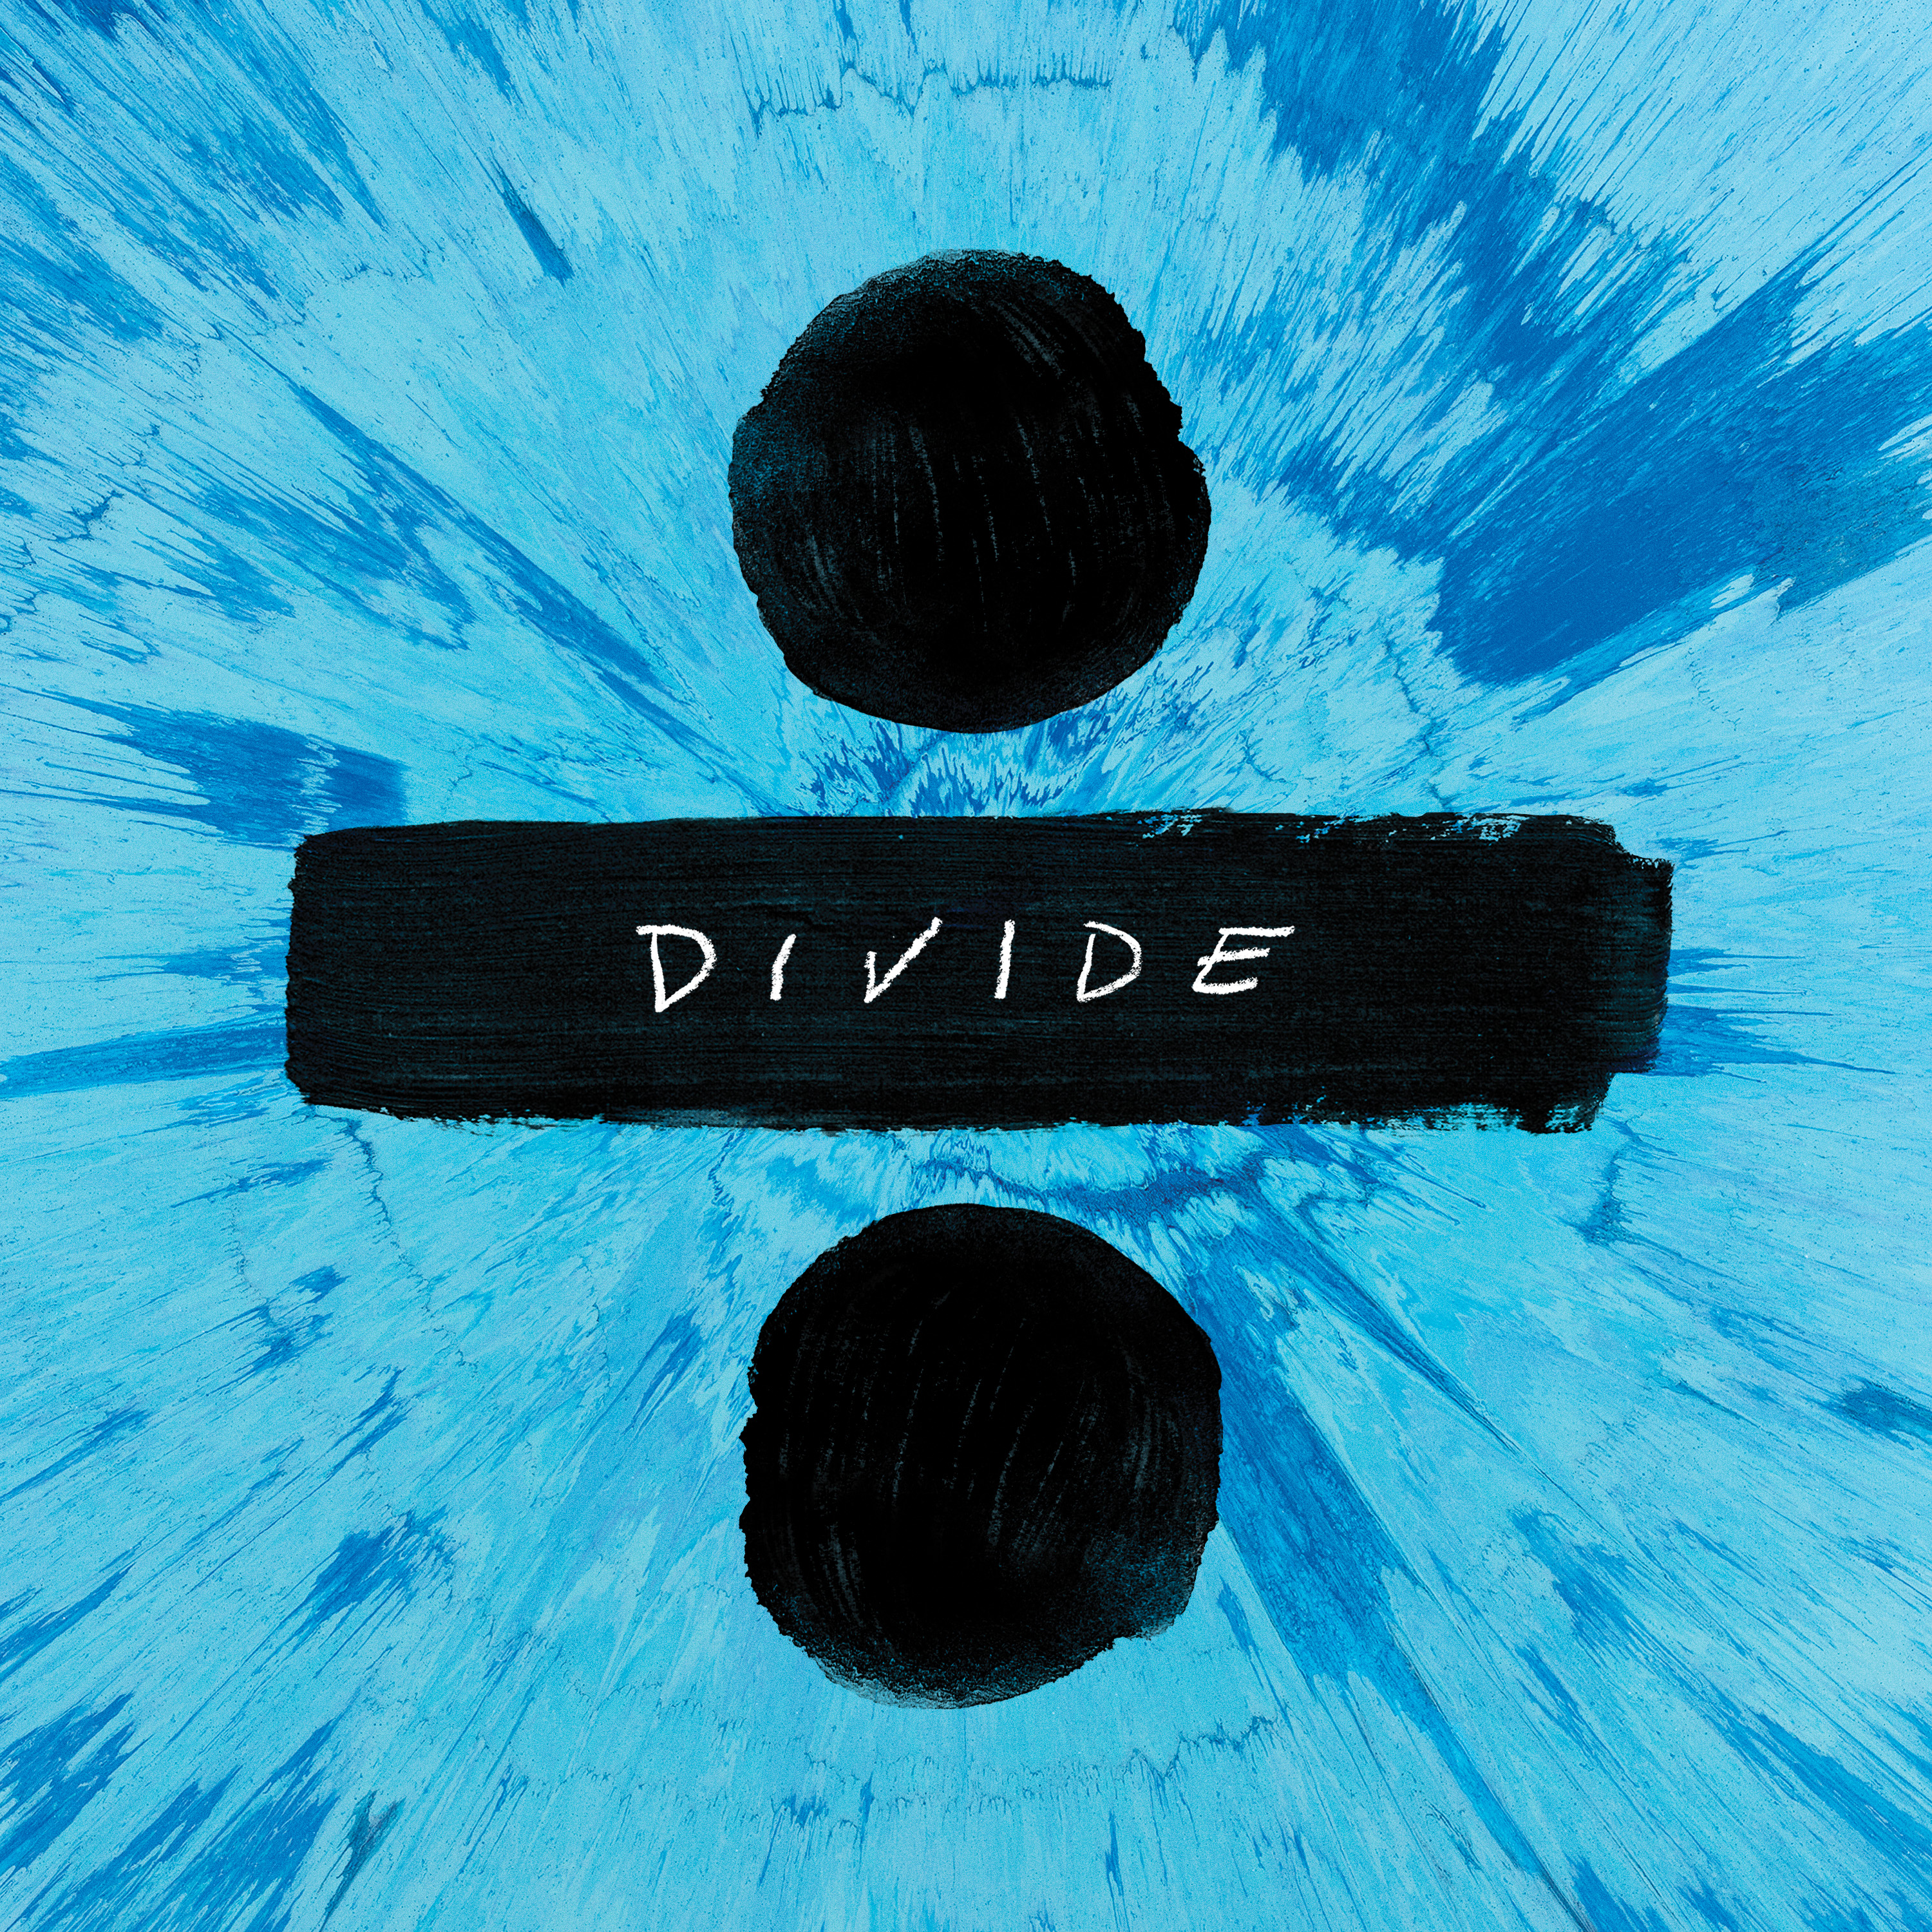 Ed Sheeran ‎– ÷ (Divide) [Atlantic][559579](2017)